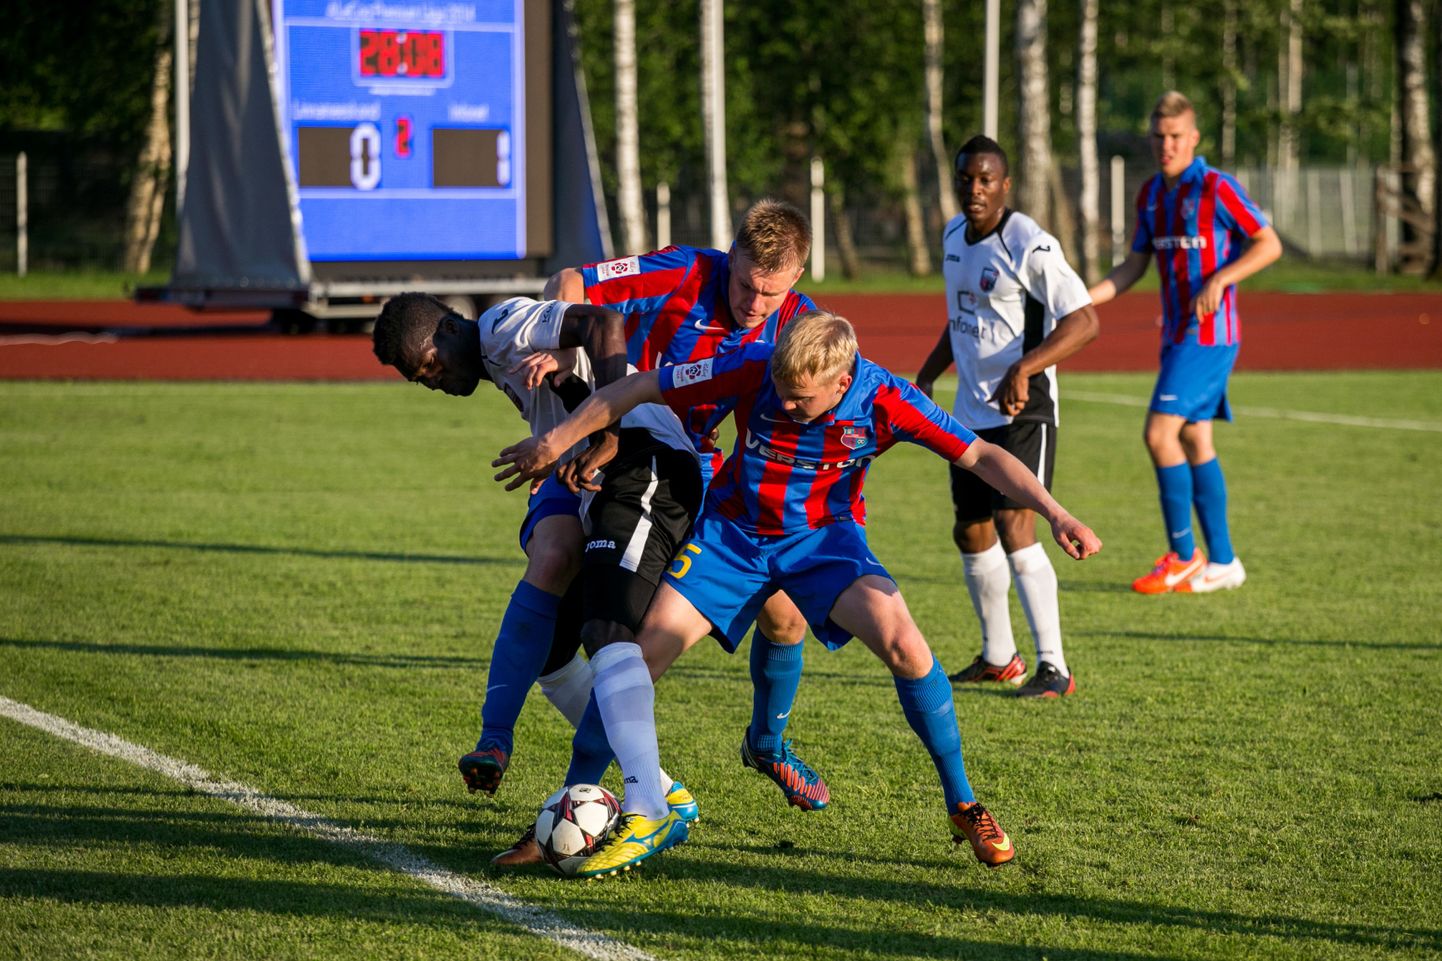 Paide linnameeskond - Tallinna FC Infonet (0-1).
DMITRI KOTJUH, JÄRVA TEATAJA/SCANPIX